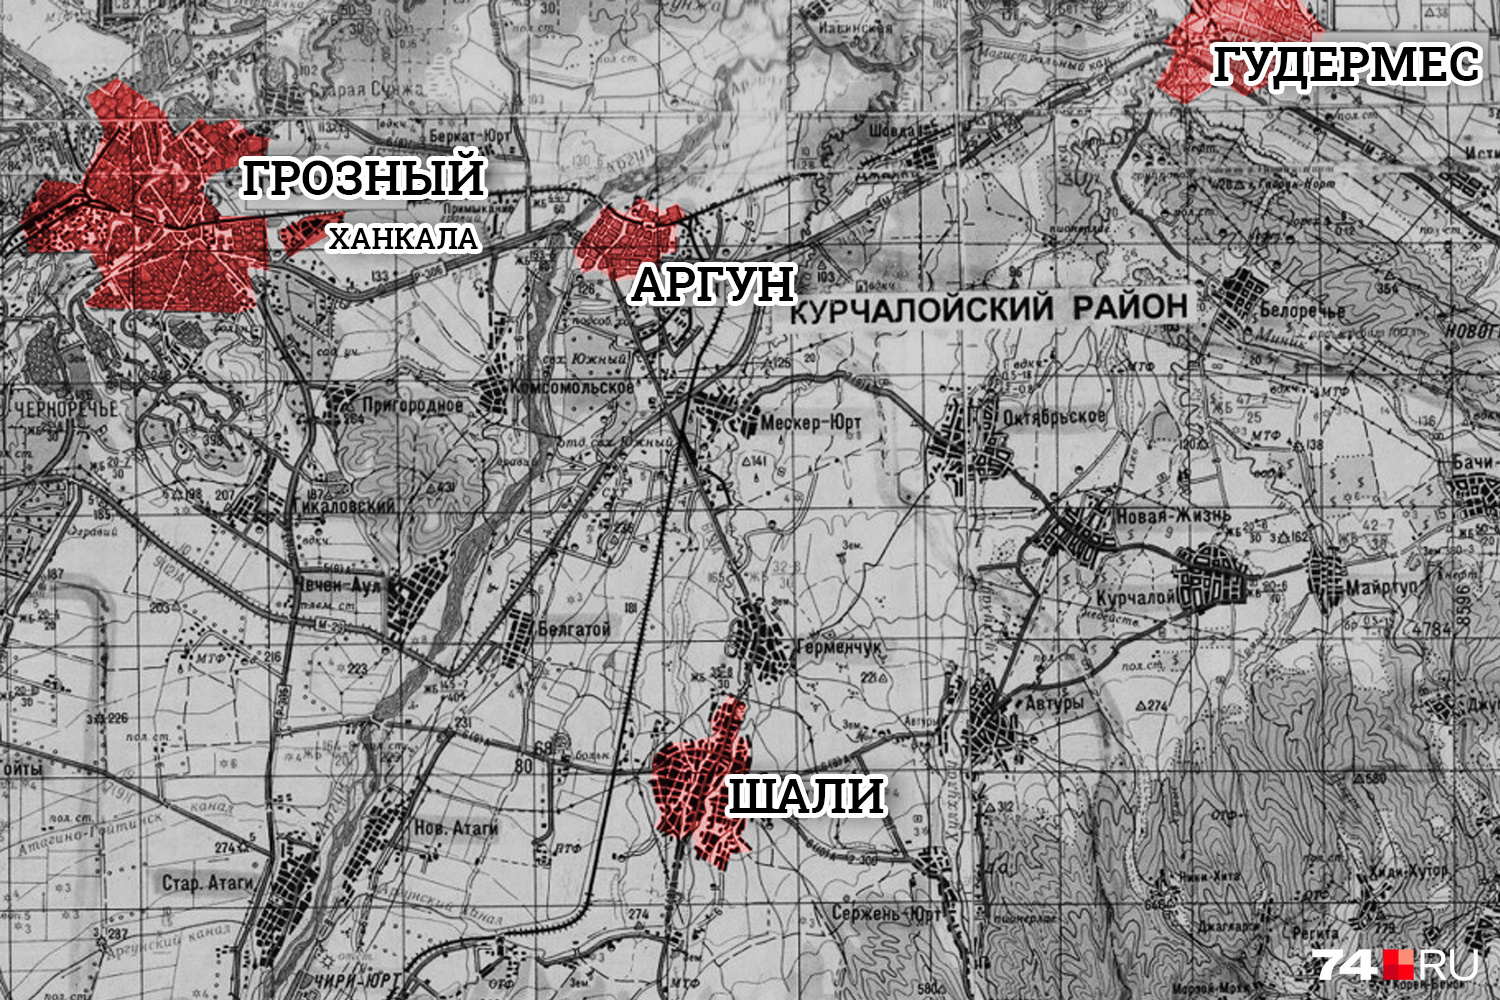 Город Аргун находится между Грозным и Гудермесом, где в то время была неофициальная столица Чечни, потому что сам Грозный лежал в руинах. В 15 километрах от Аргуна — Ханкала, где стояла объединённая группировка войск. Аргун находится на перекрестье транспортных путей и имеет ключевое значение для войсковых операций